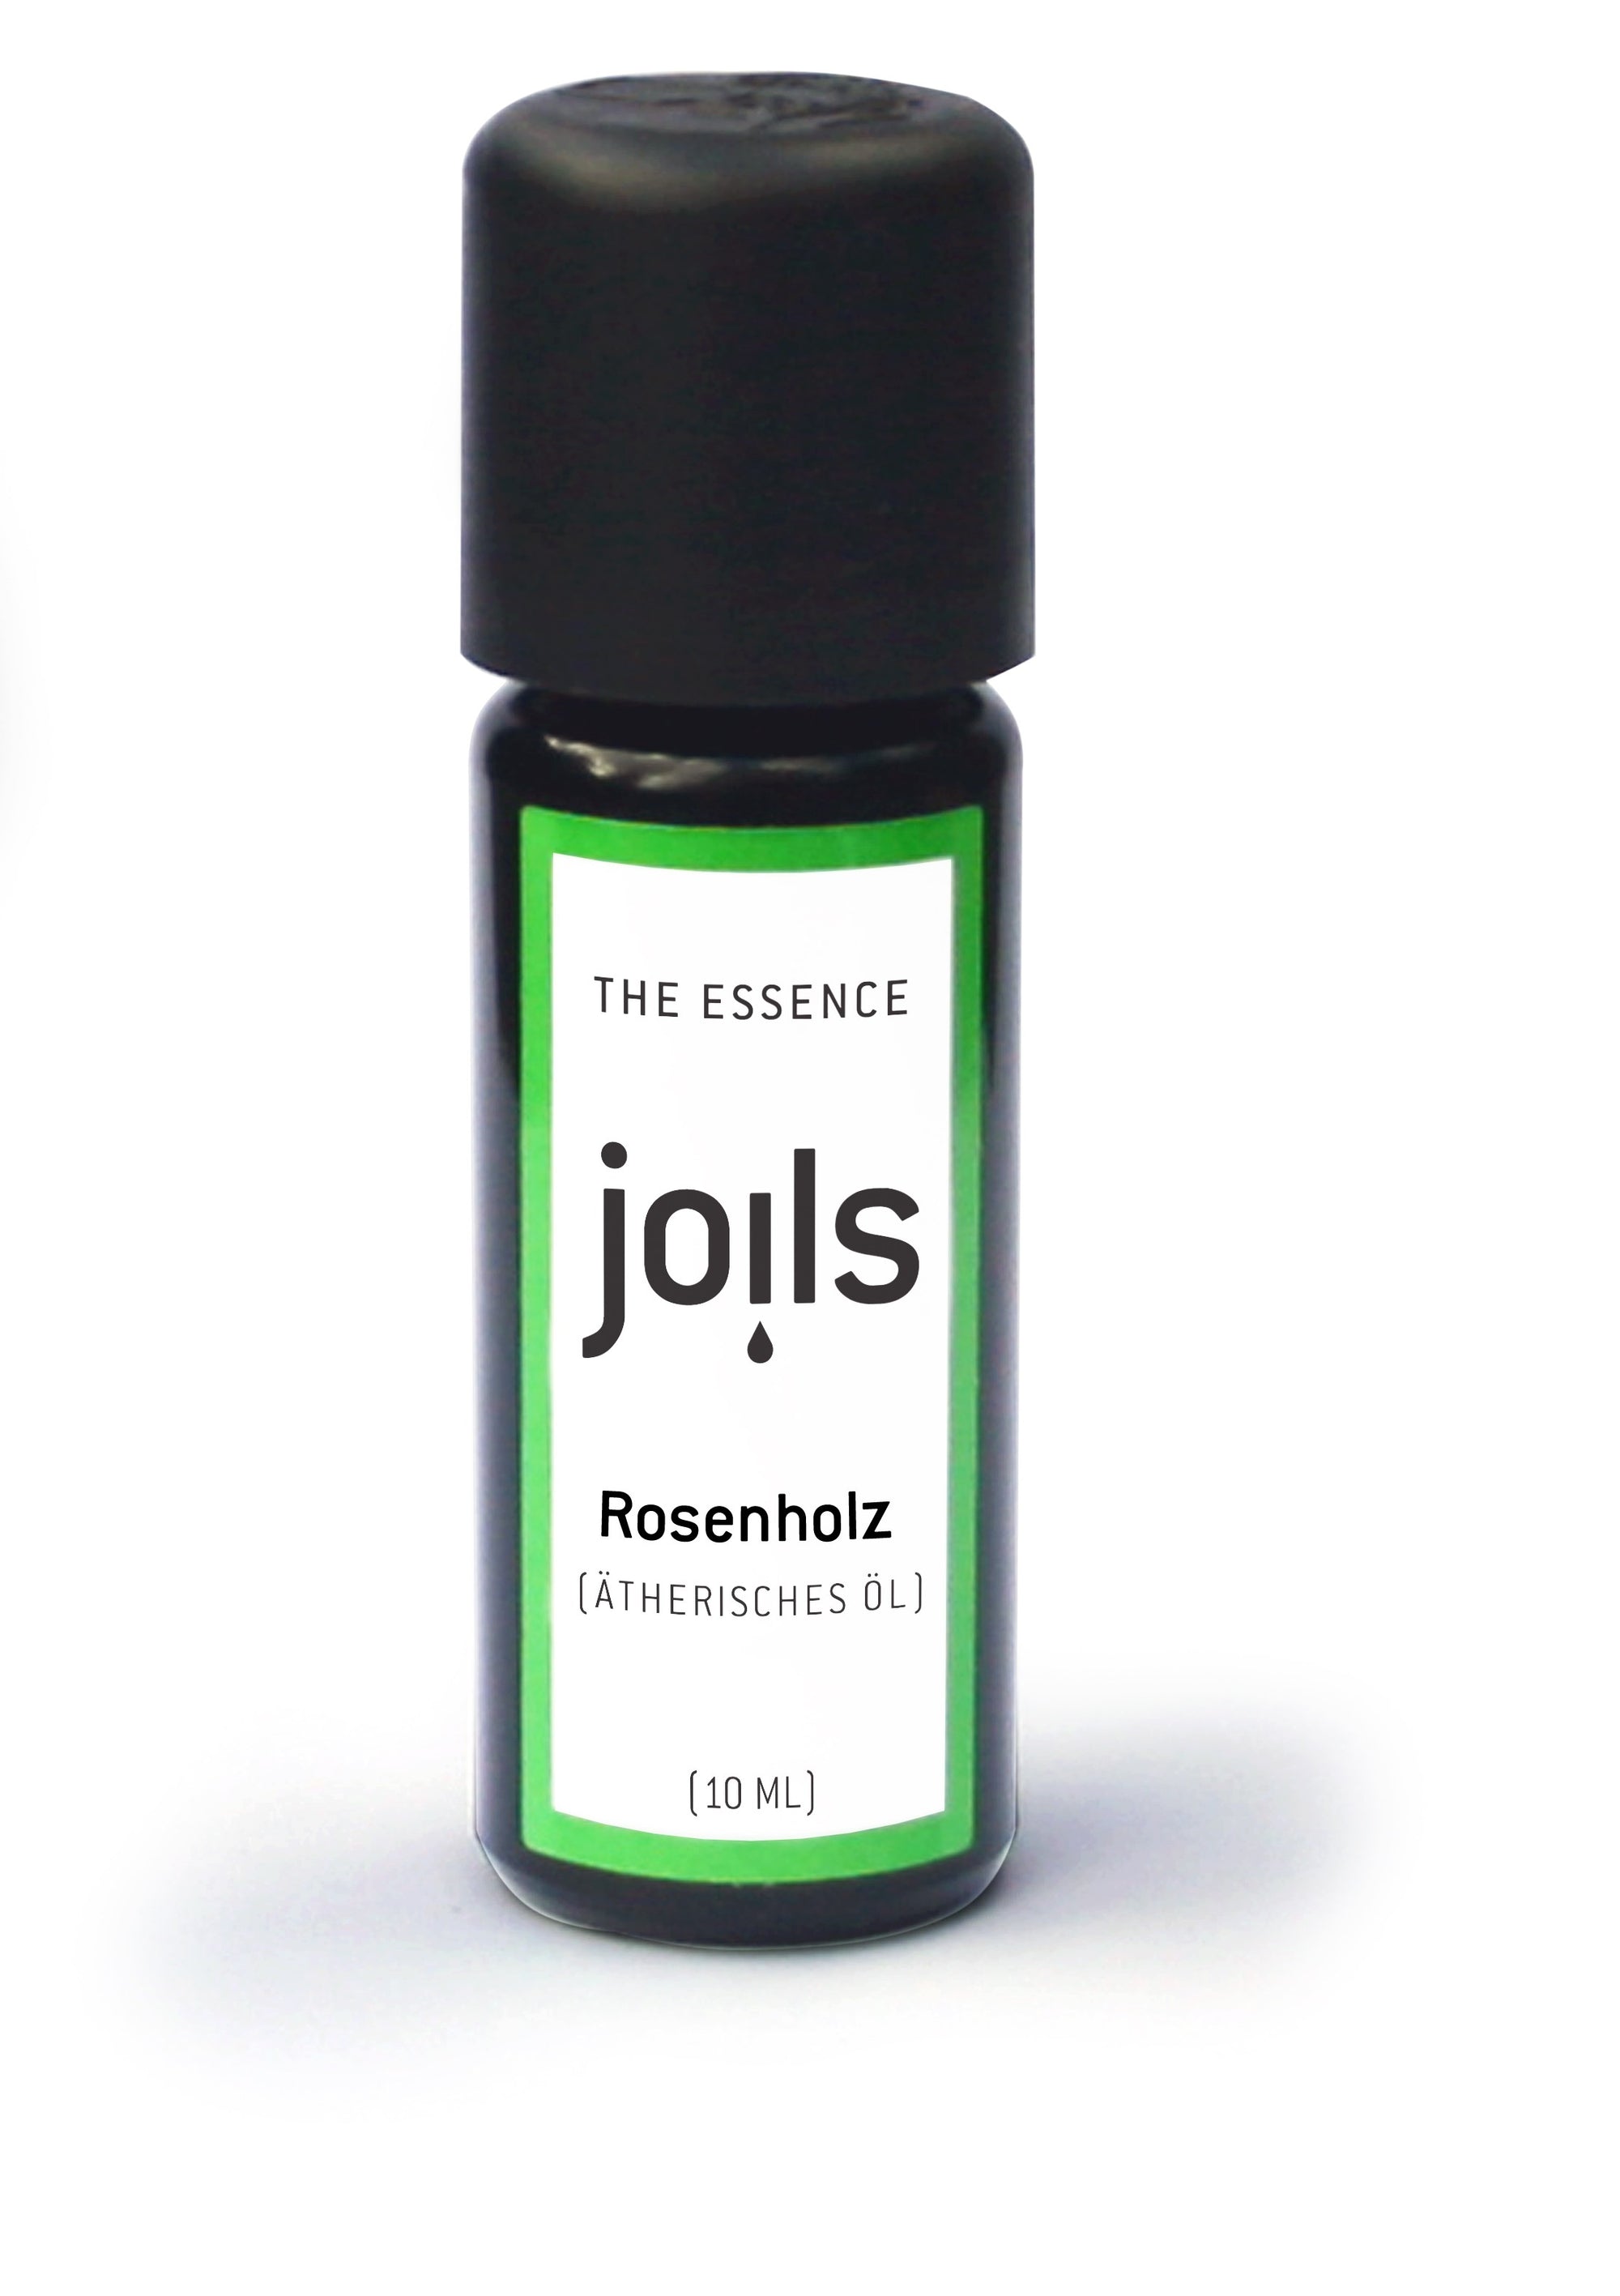 ROSENHOLZ 10ml - Joils